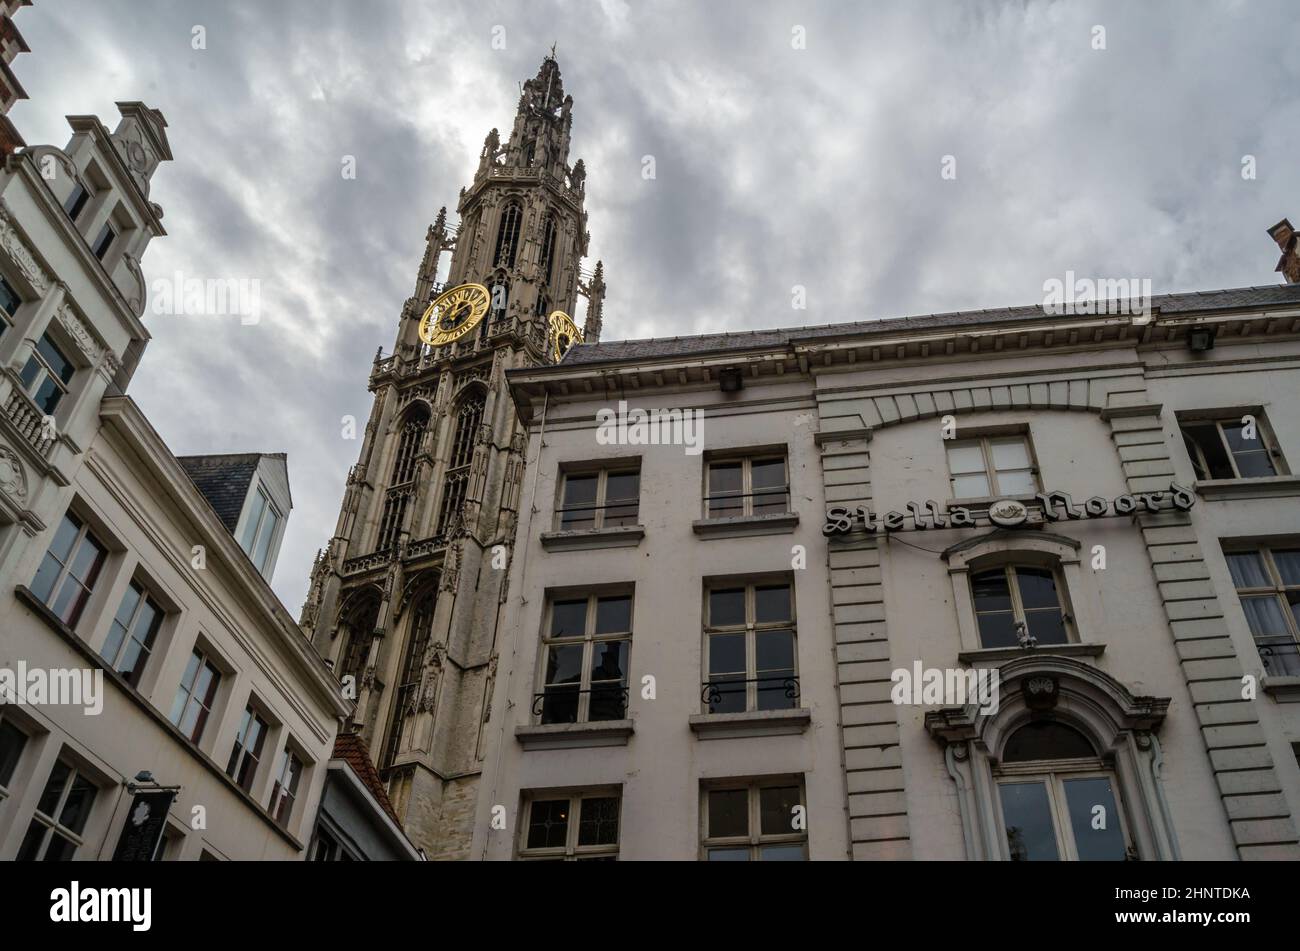 ANVERS, BELGIQUE - 22 AOÛT 2013 : paysage urbain, architecture dans la ville d'Anvers, Flandre, Belgique Banque D'Images